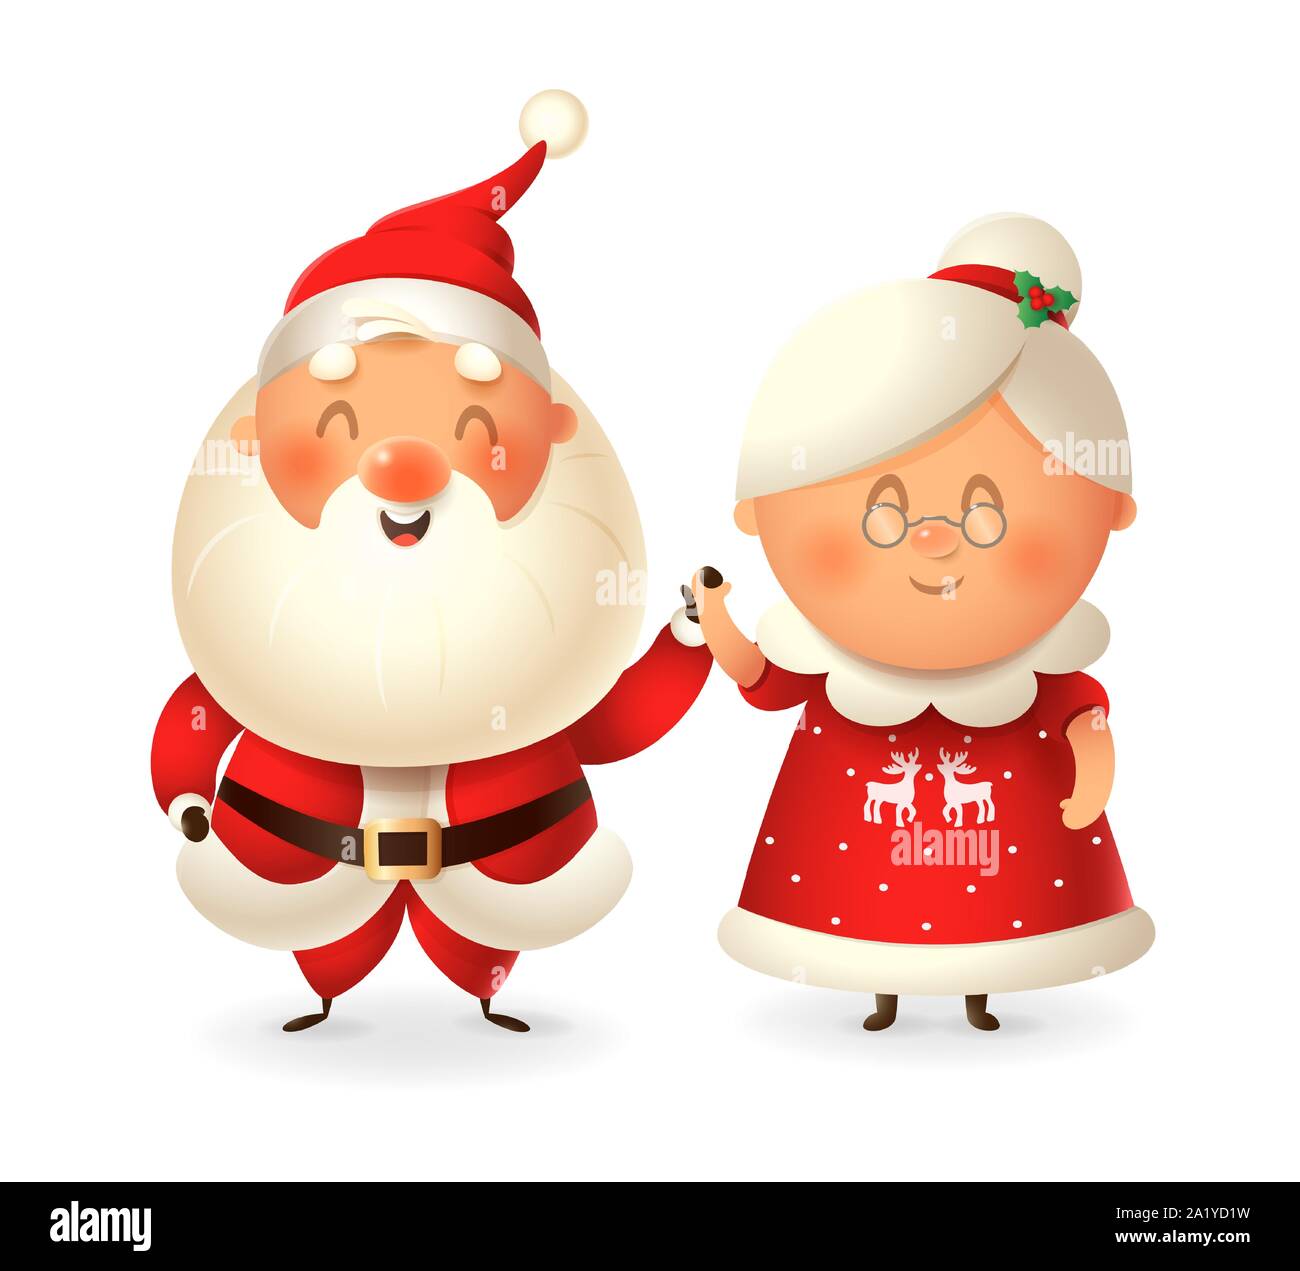 Le Père Noël et son épouse Mme Noël célébrer les jours fériés - vector illustration isolé sur fond transparent Illustration de Vecteur